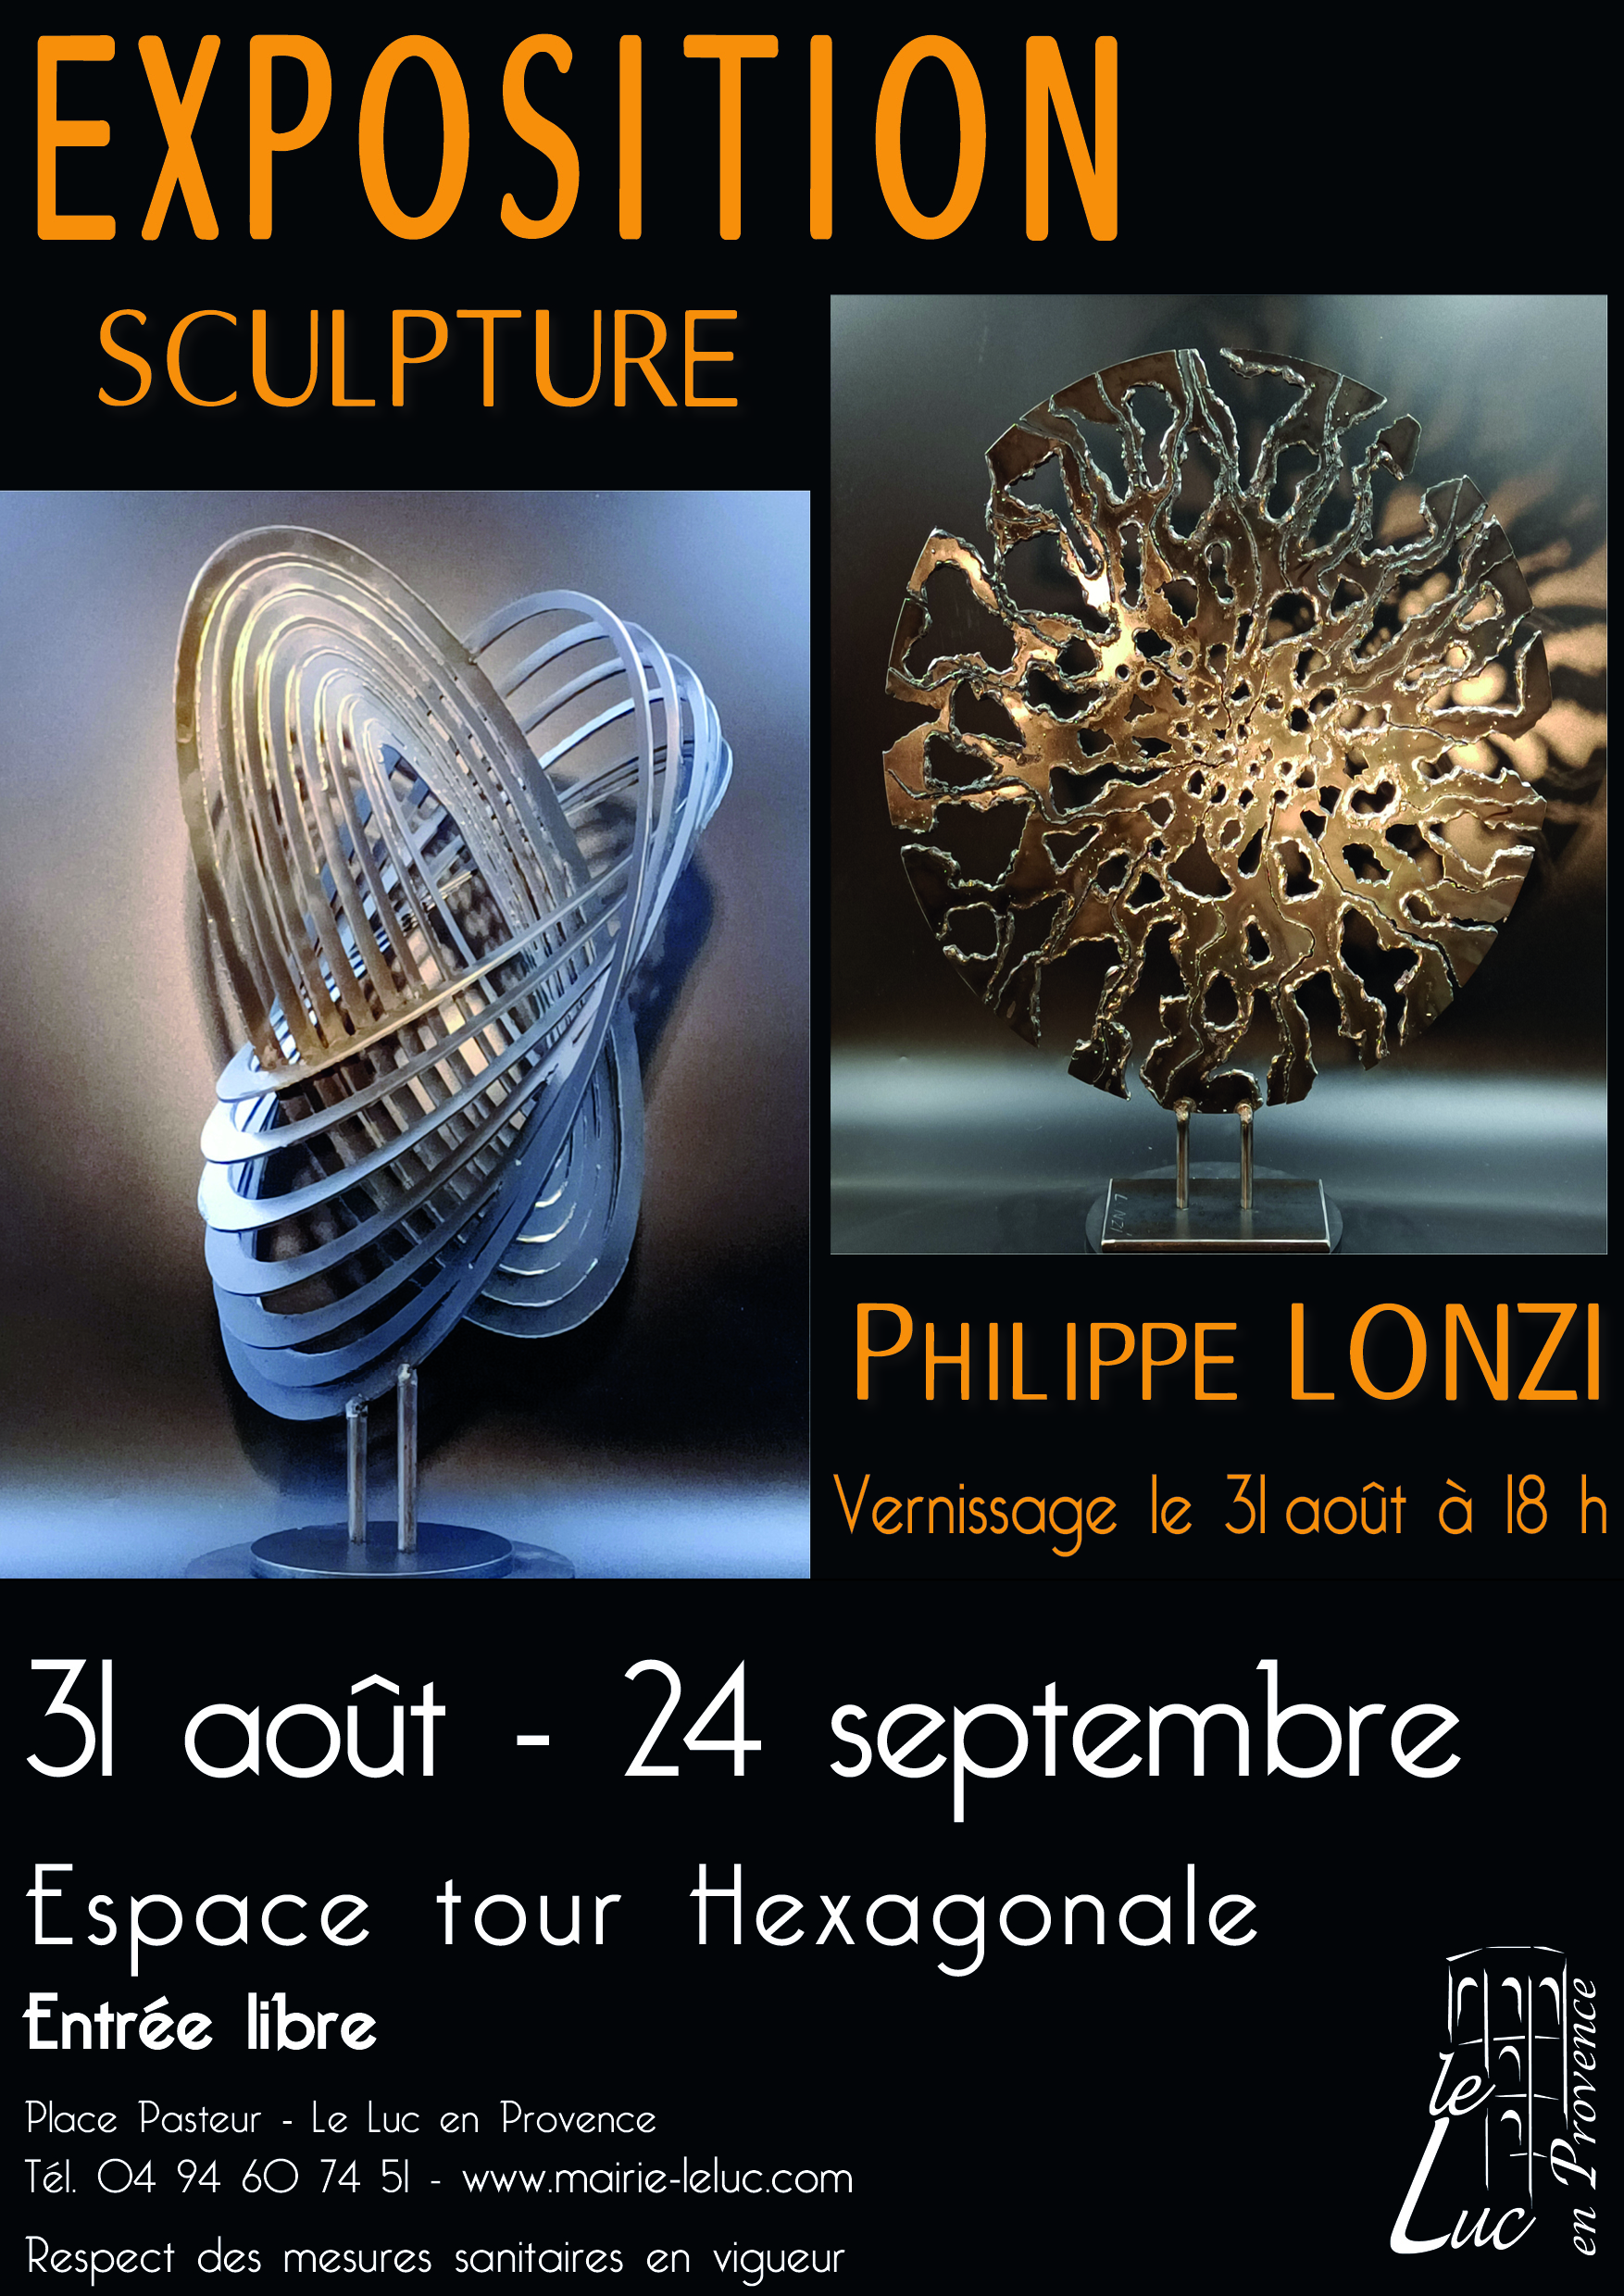 Jusqu’au 24 septembre – Exposition de sculpture de Philippe Lonzi